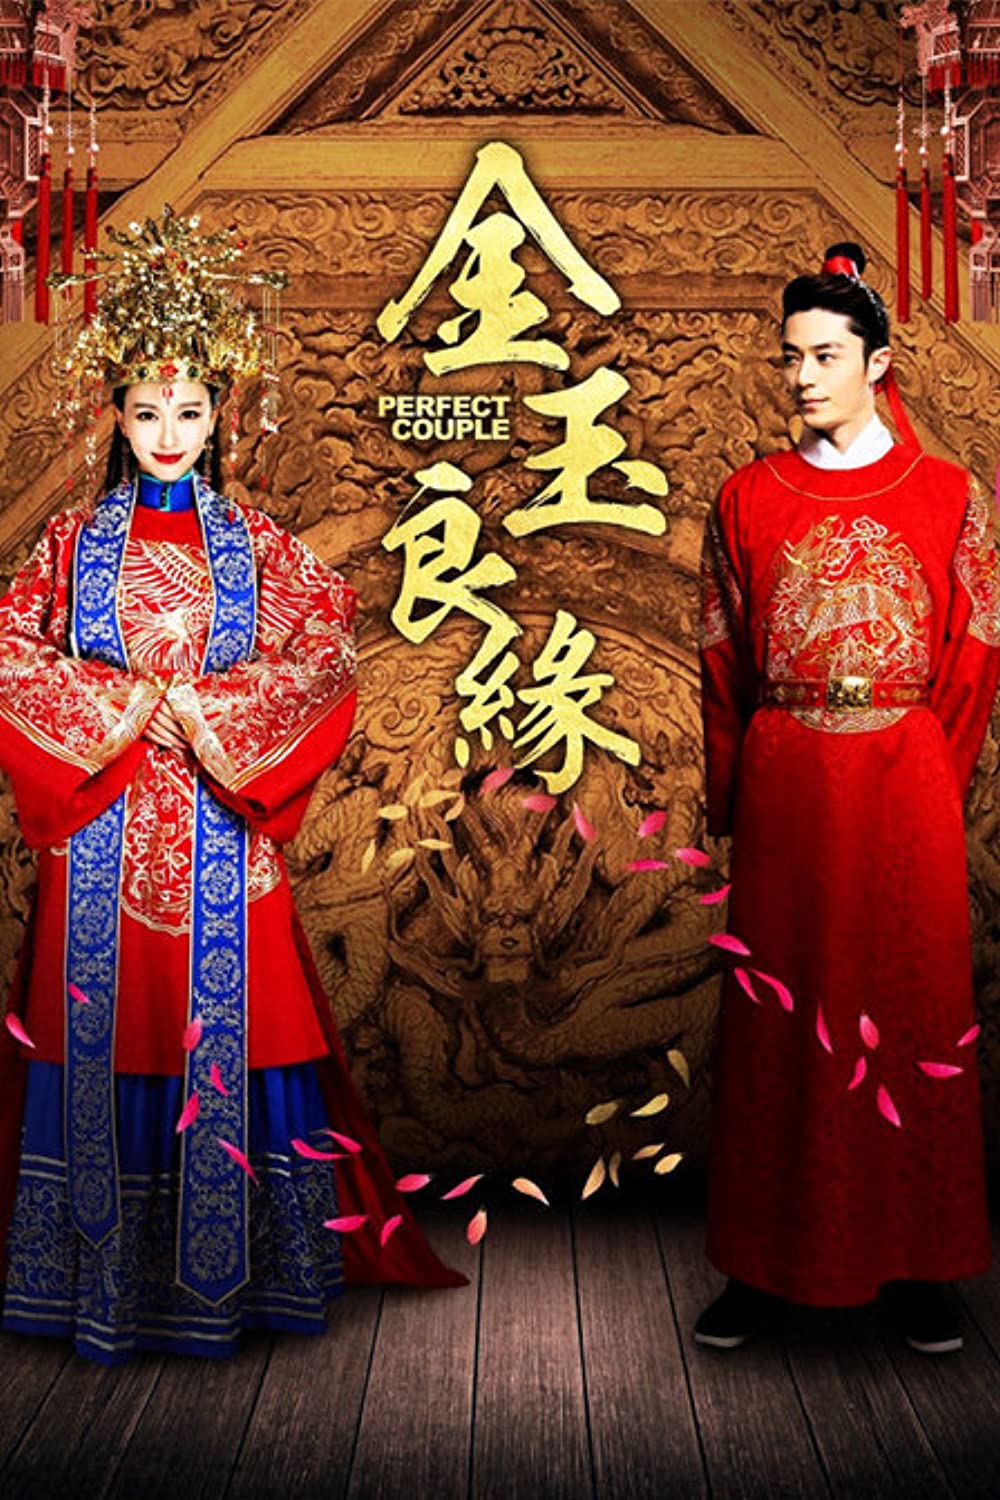 Phim của Hoắc Kiến Hoa: Kim ngọc lương duyên - Perfect Couple (2014)